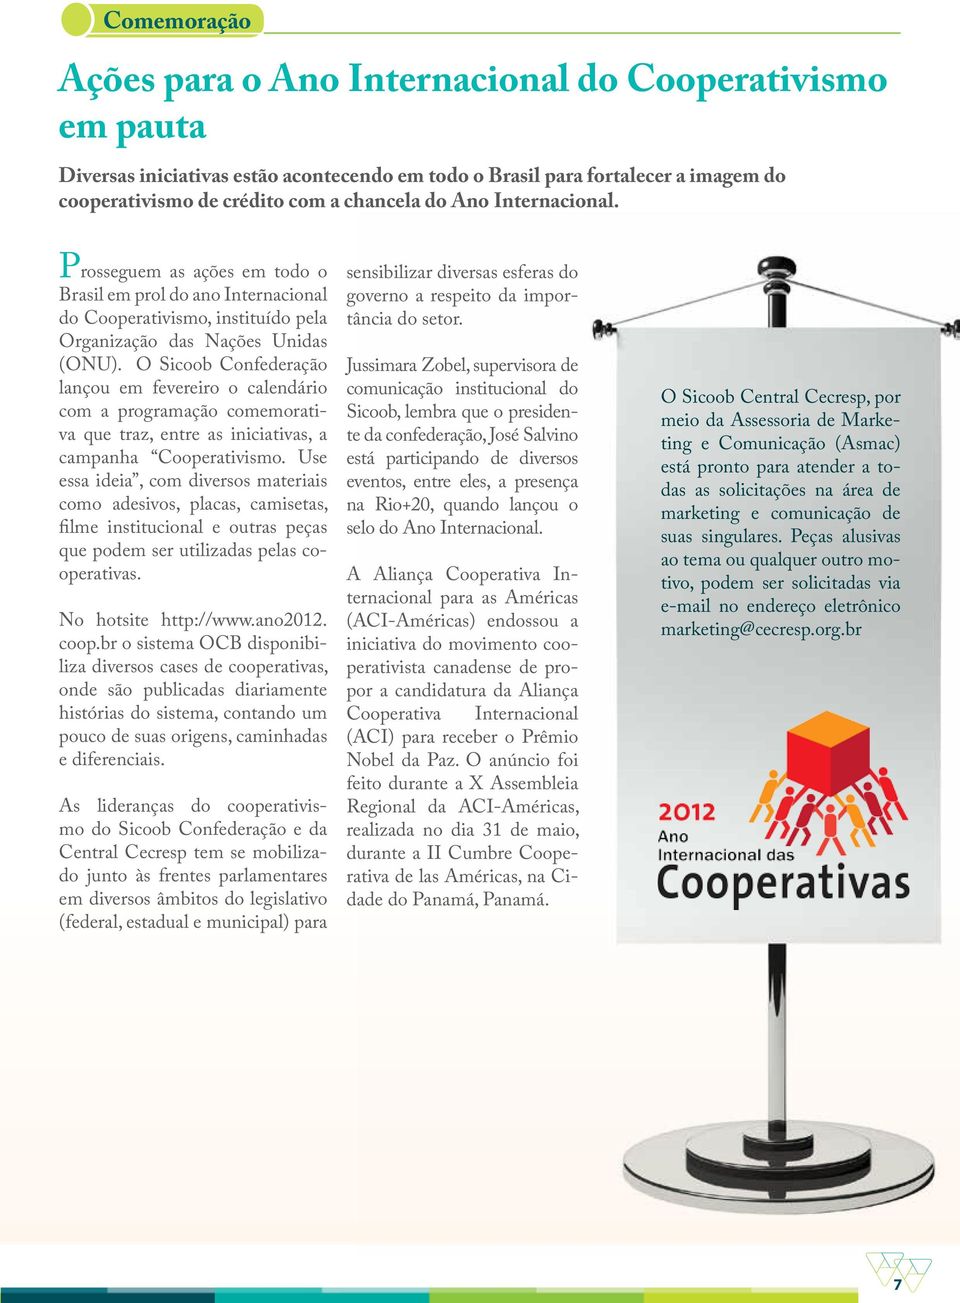 O Sicoob Confederação lançou em fevereiro o calendário com a programação comemorativa que traz, entre as iniciativas, a campanha Cooperativismo.